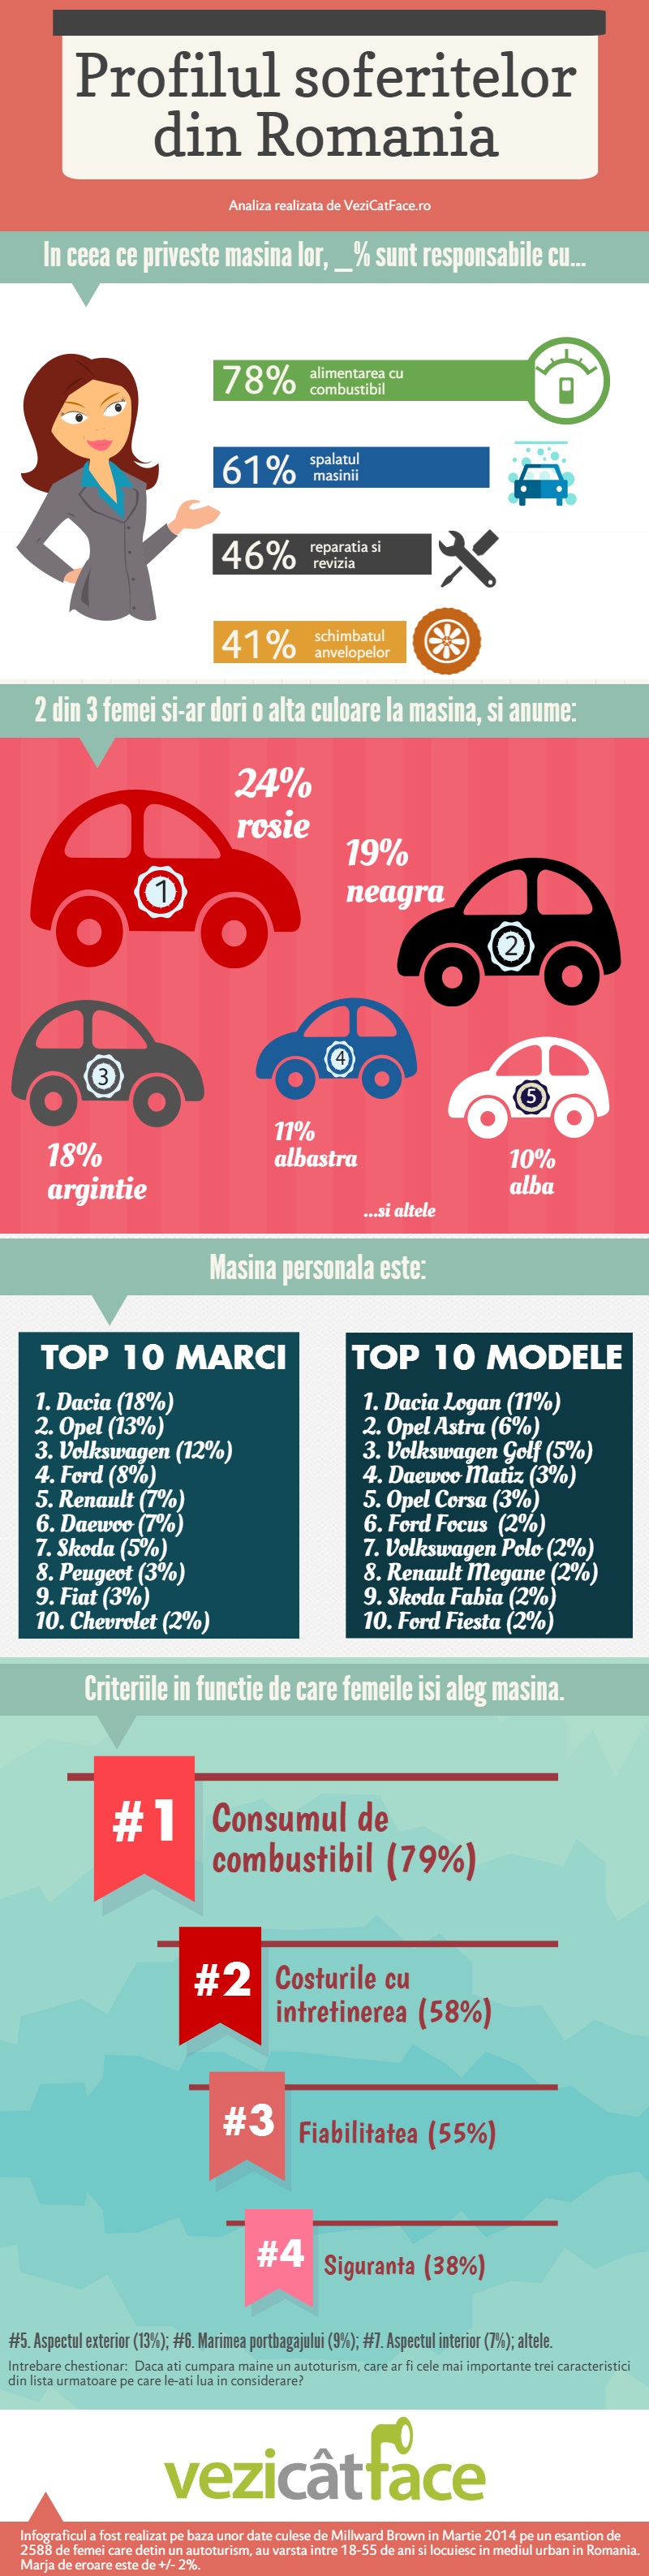 Studiu: 2 din 3 femei din Romania si-ar dori o alta culoare la masina